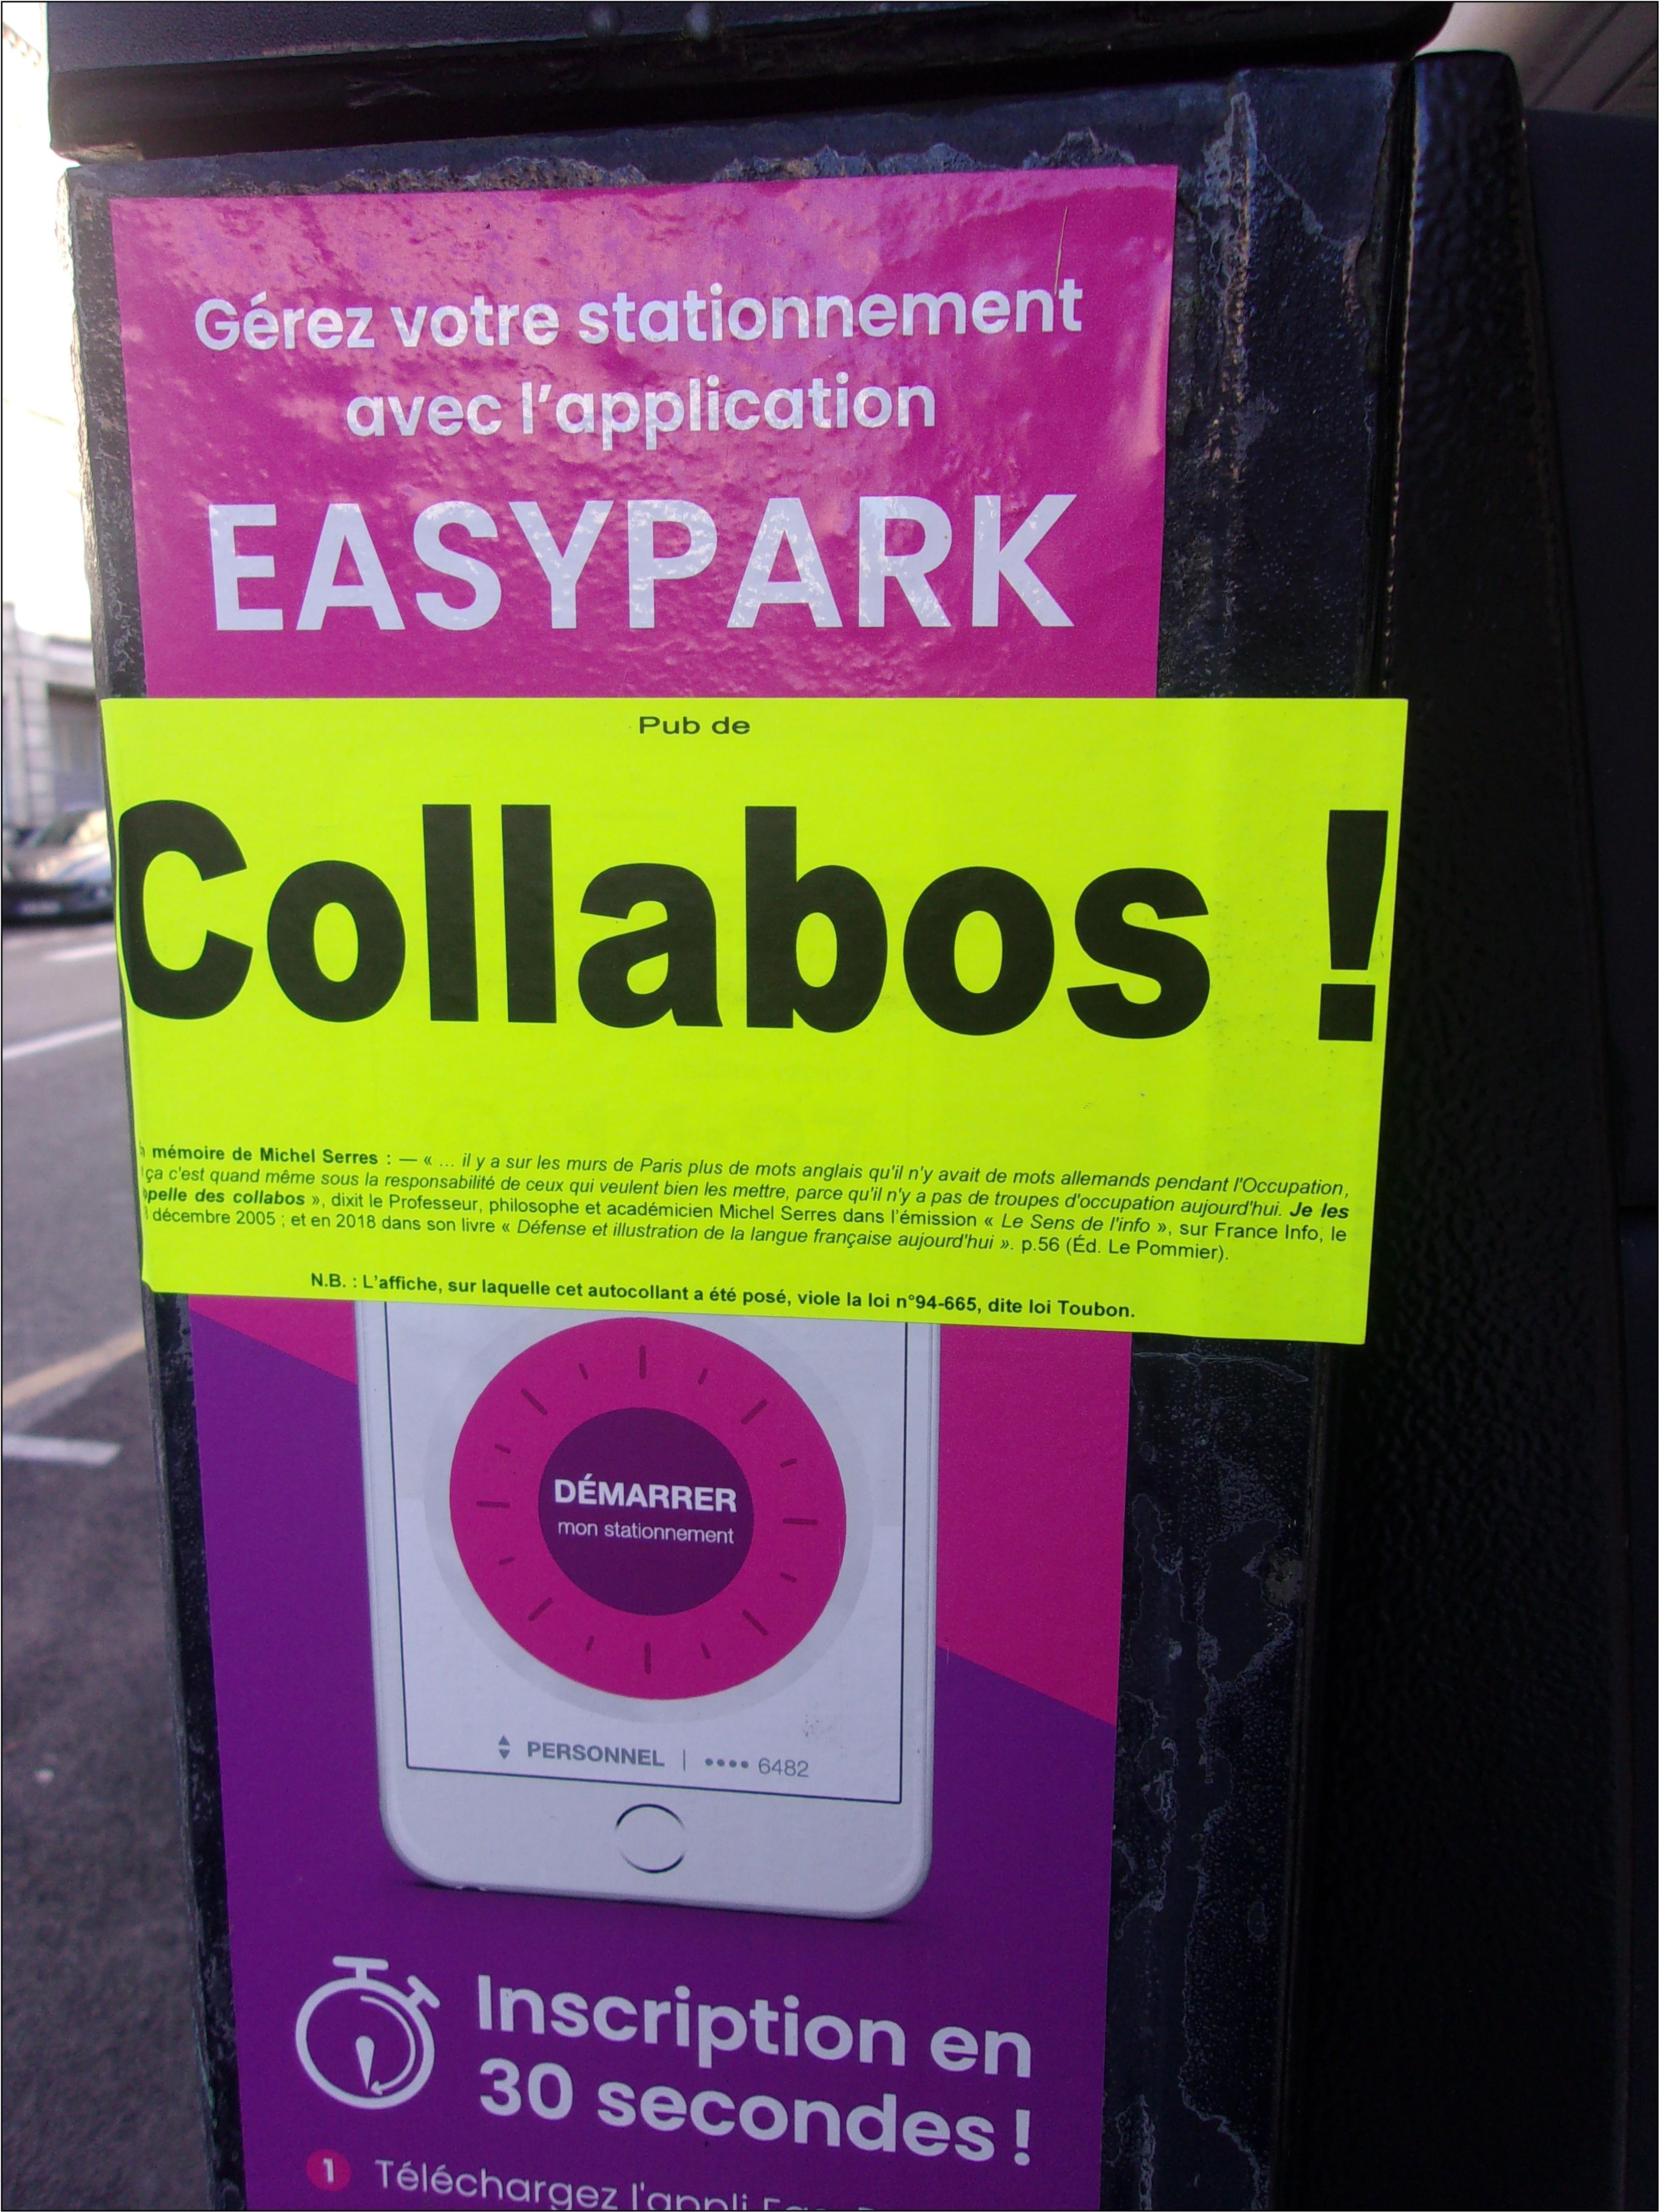 Easypark, une application pour gérer votre stationnement